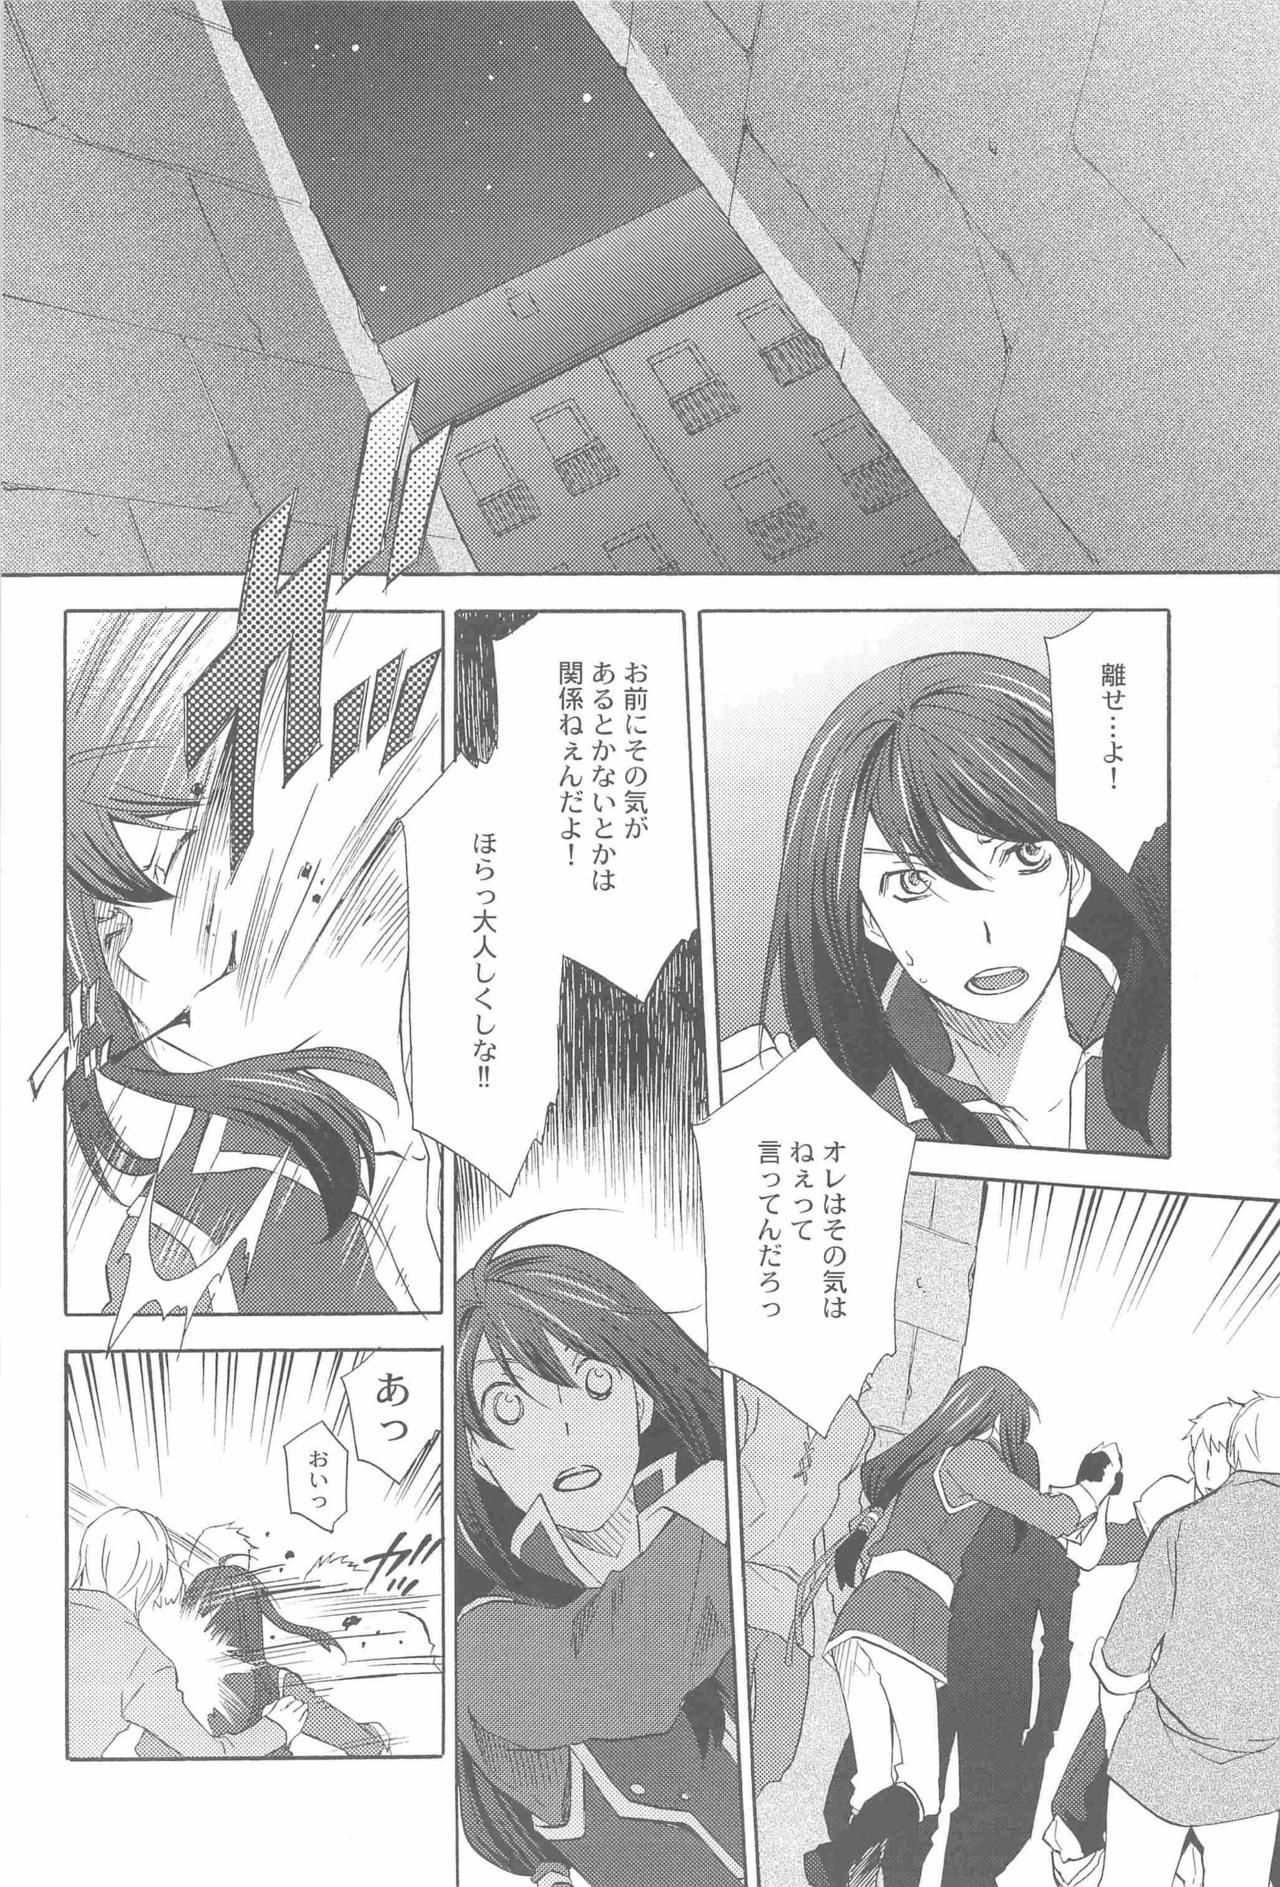 Strap On Teikoku no Inu Naburi - Tales of vesperia Uniform - Page 5